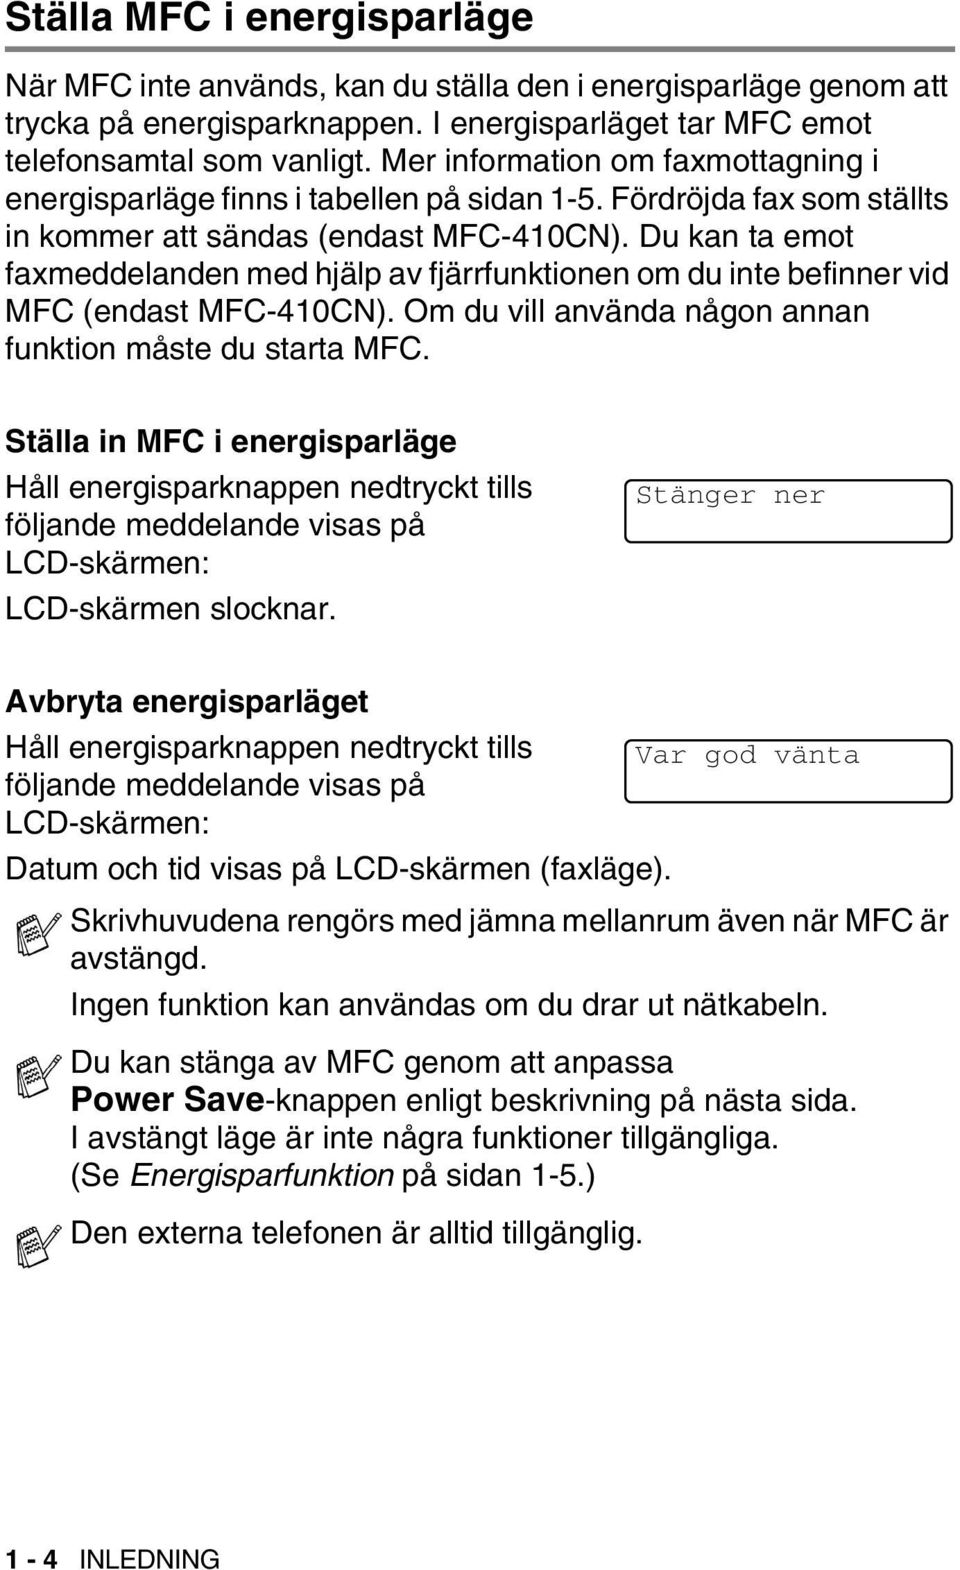 Du kan ta emot faxmeddelanden med hjälp av fjärrfunktionen om du inte befinner vid MFC (endast MFC-410CN). Om du vill använda någon annan funktion måste du starta MFC.